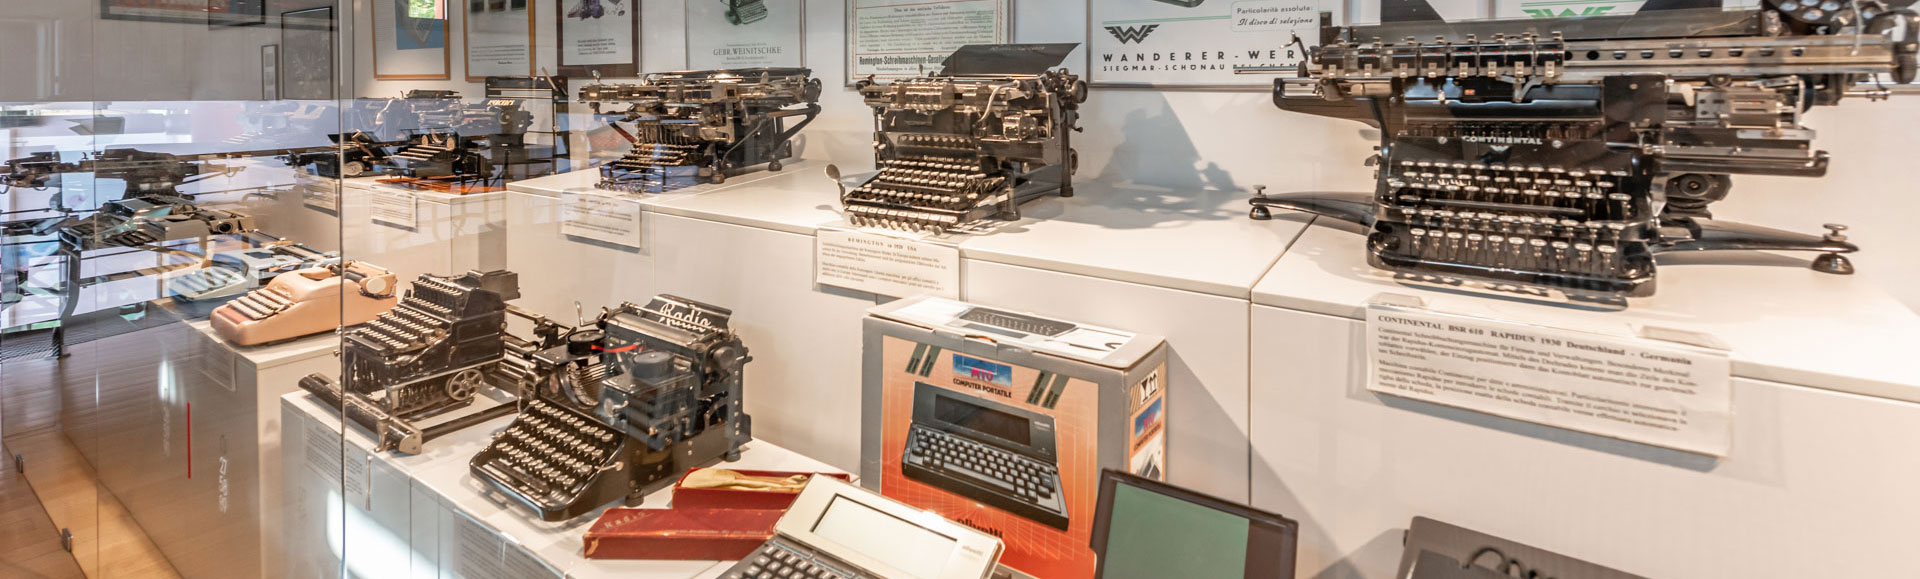 Typewriter Museum Peter Mitterhofer